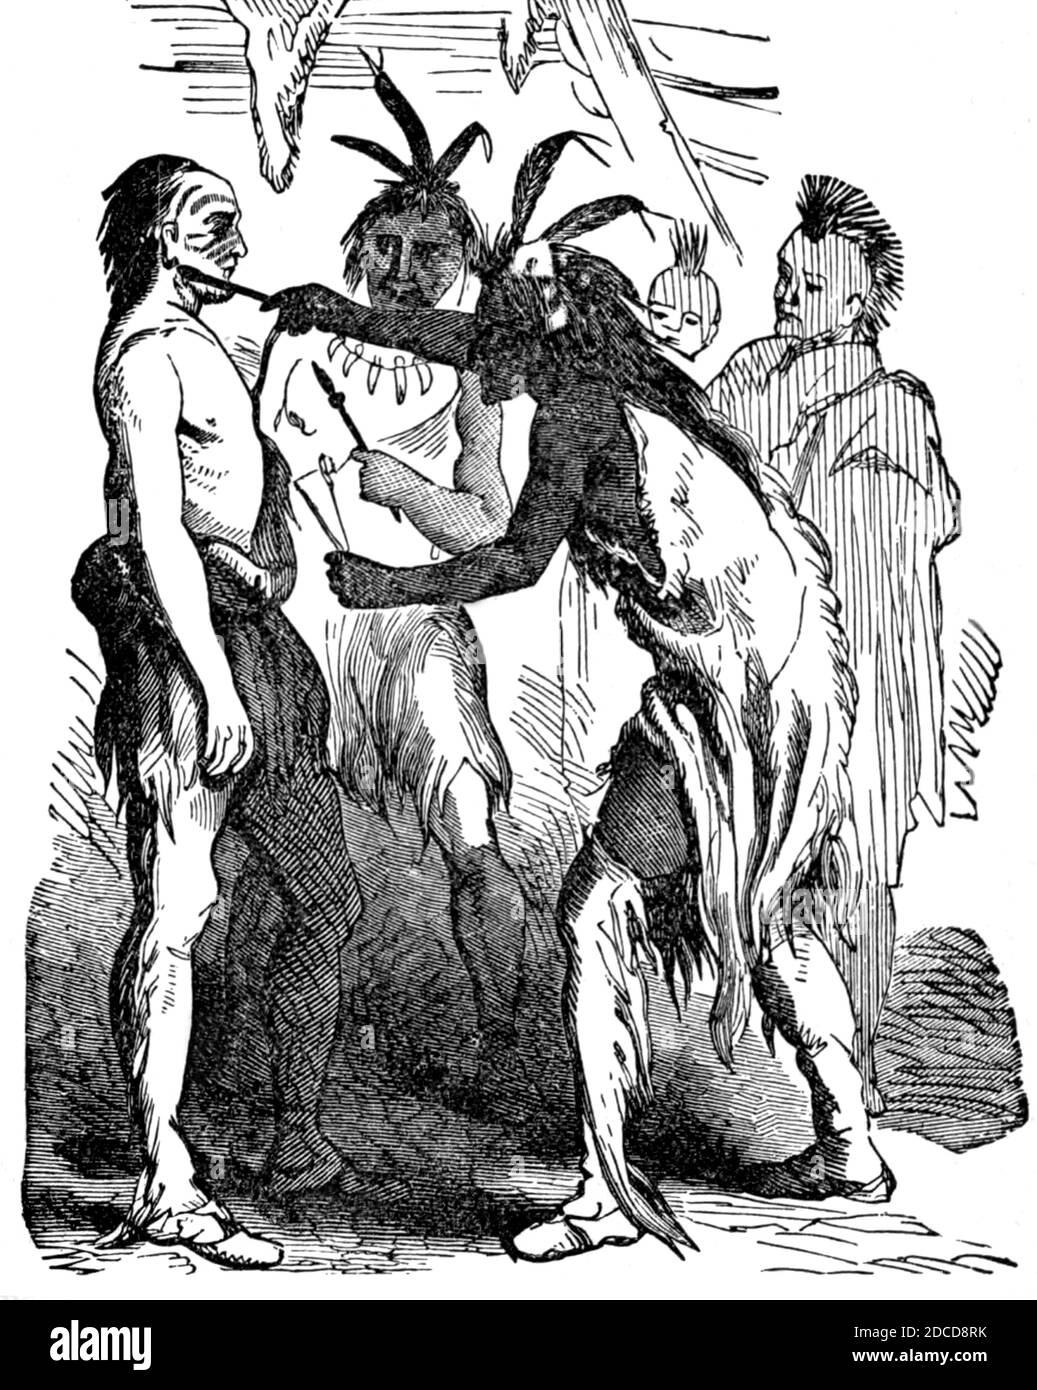 Daniel Boone adopté dans Shawnee Tribe, 1778 Banque D'Images